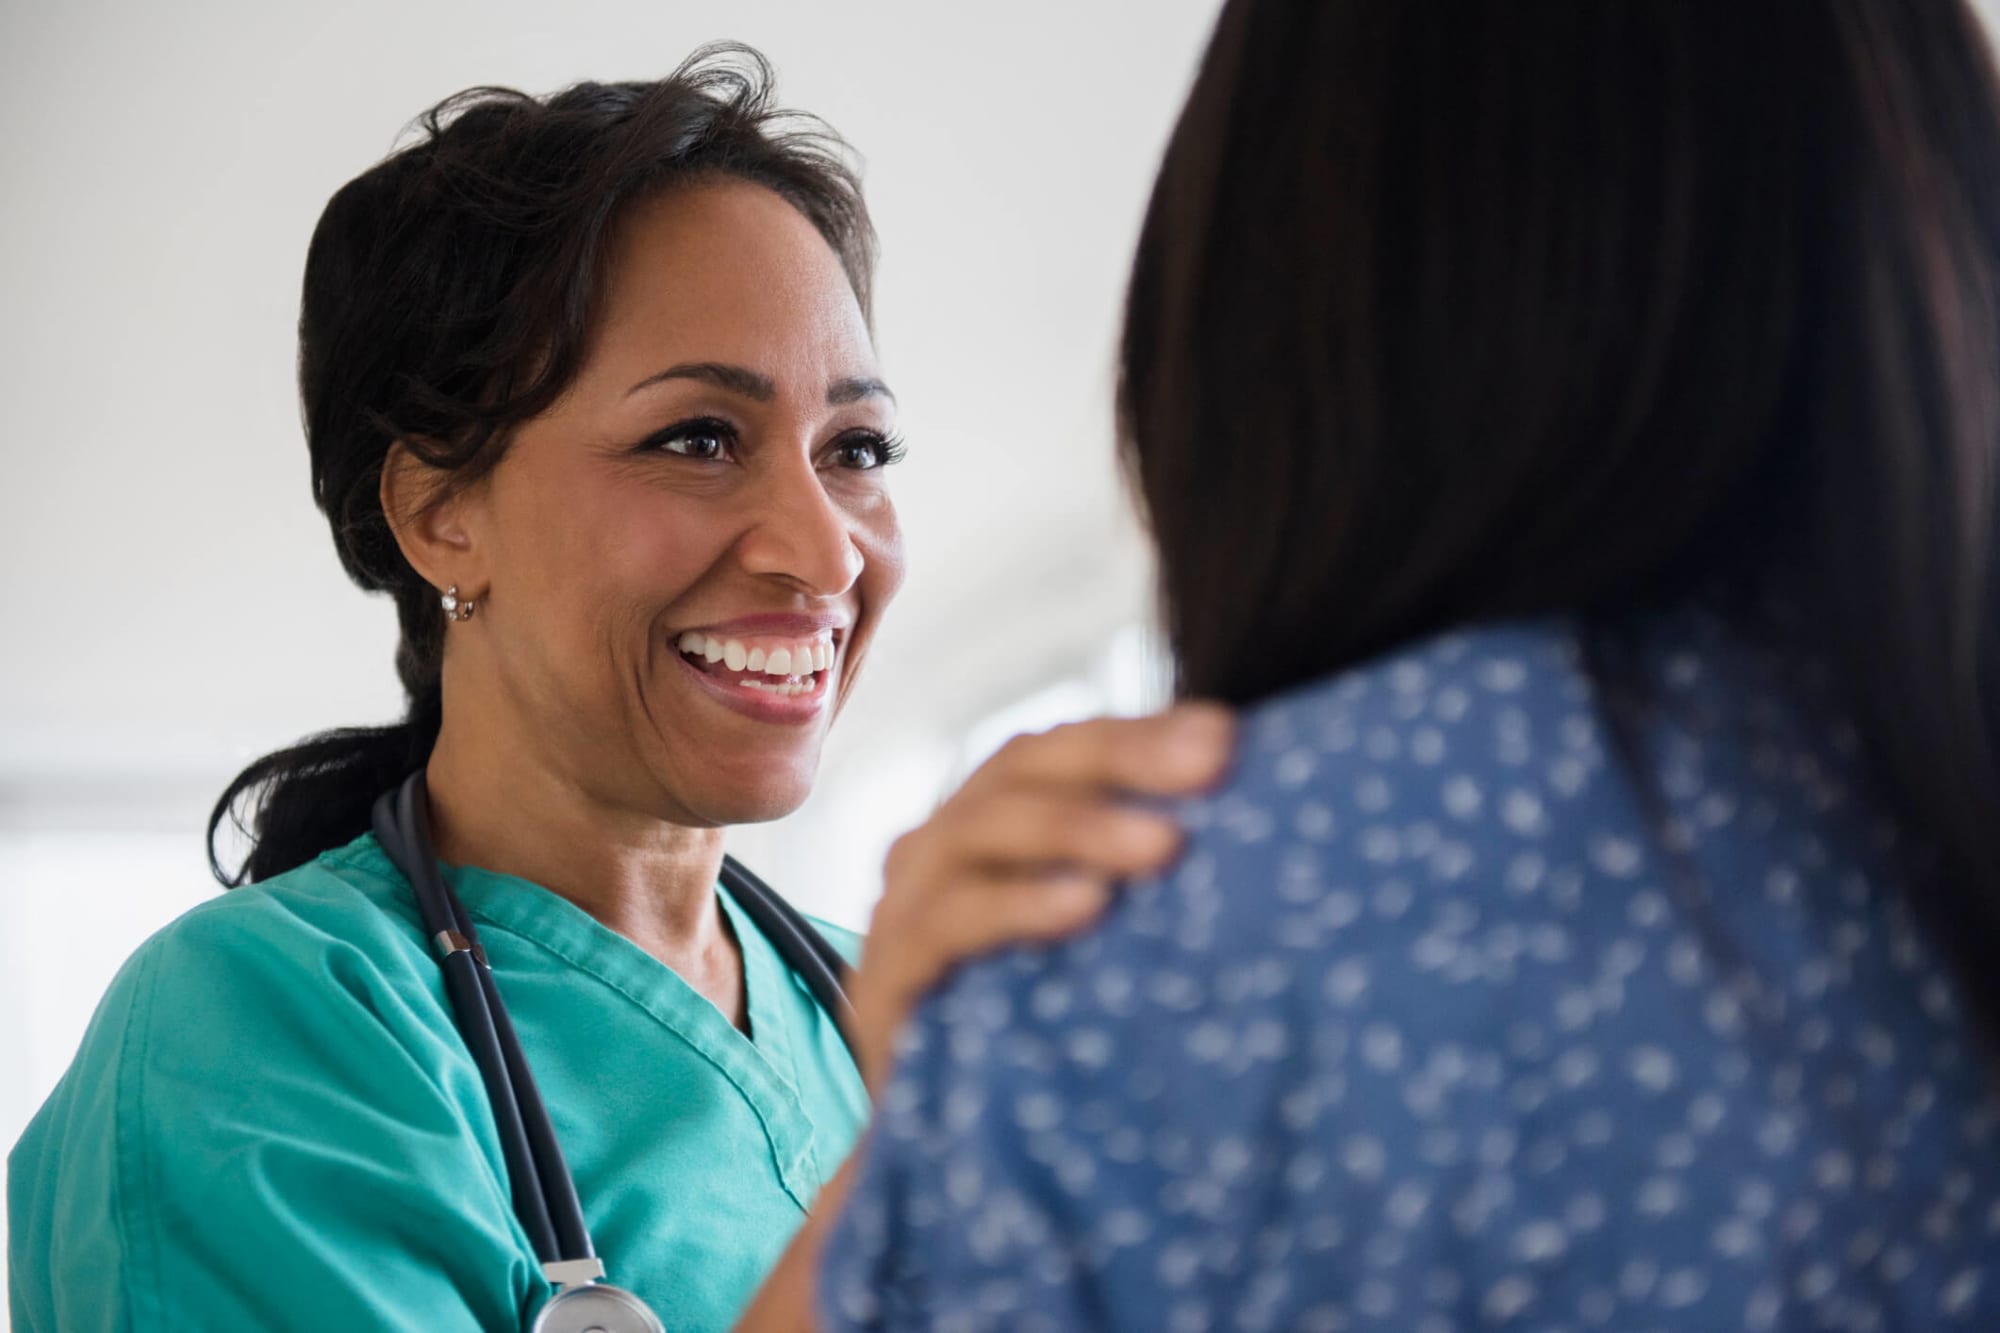 Adult-Gerontology Nurse Practitioner Career Overview